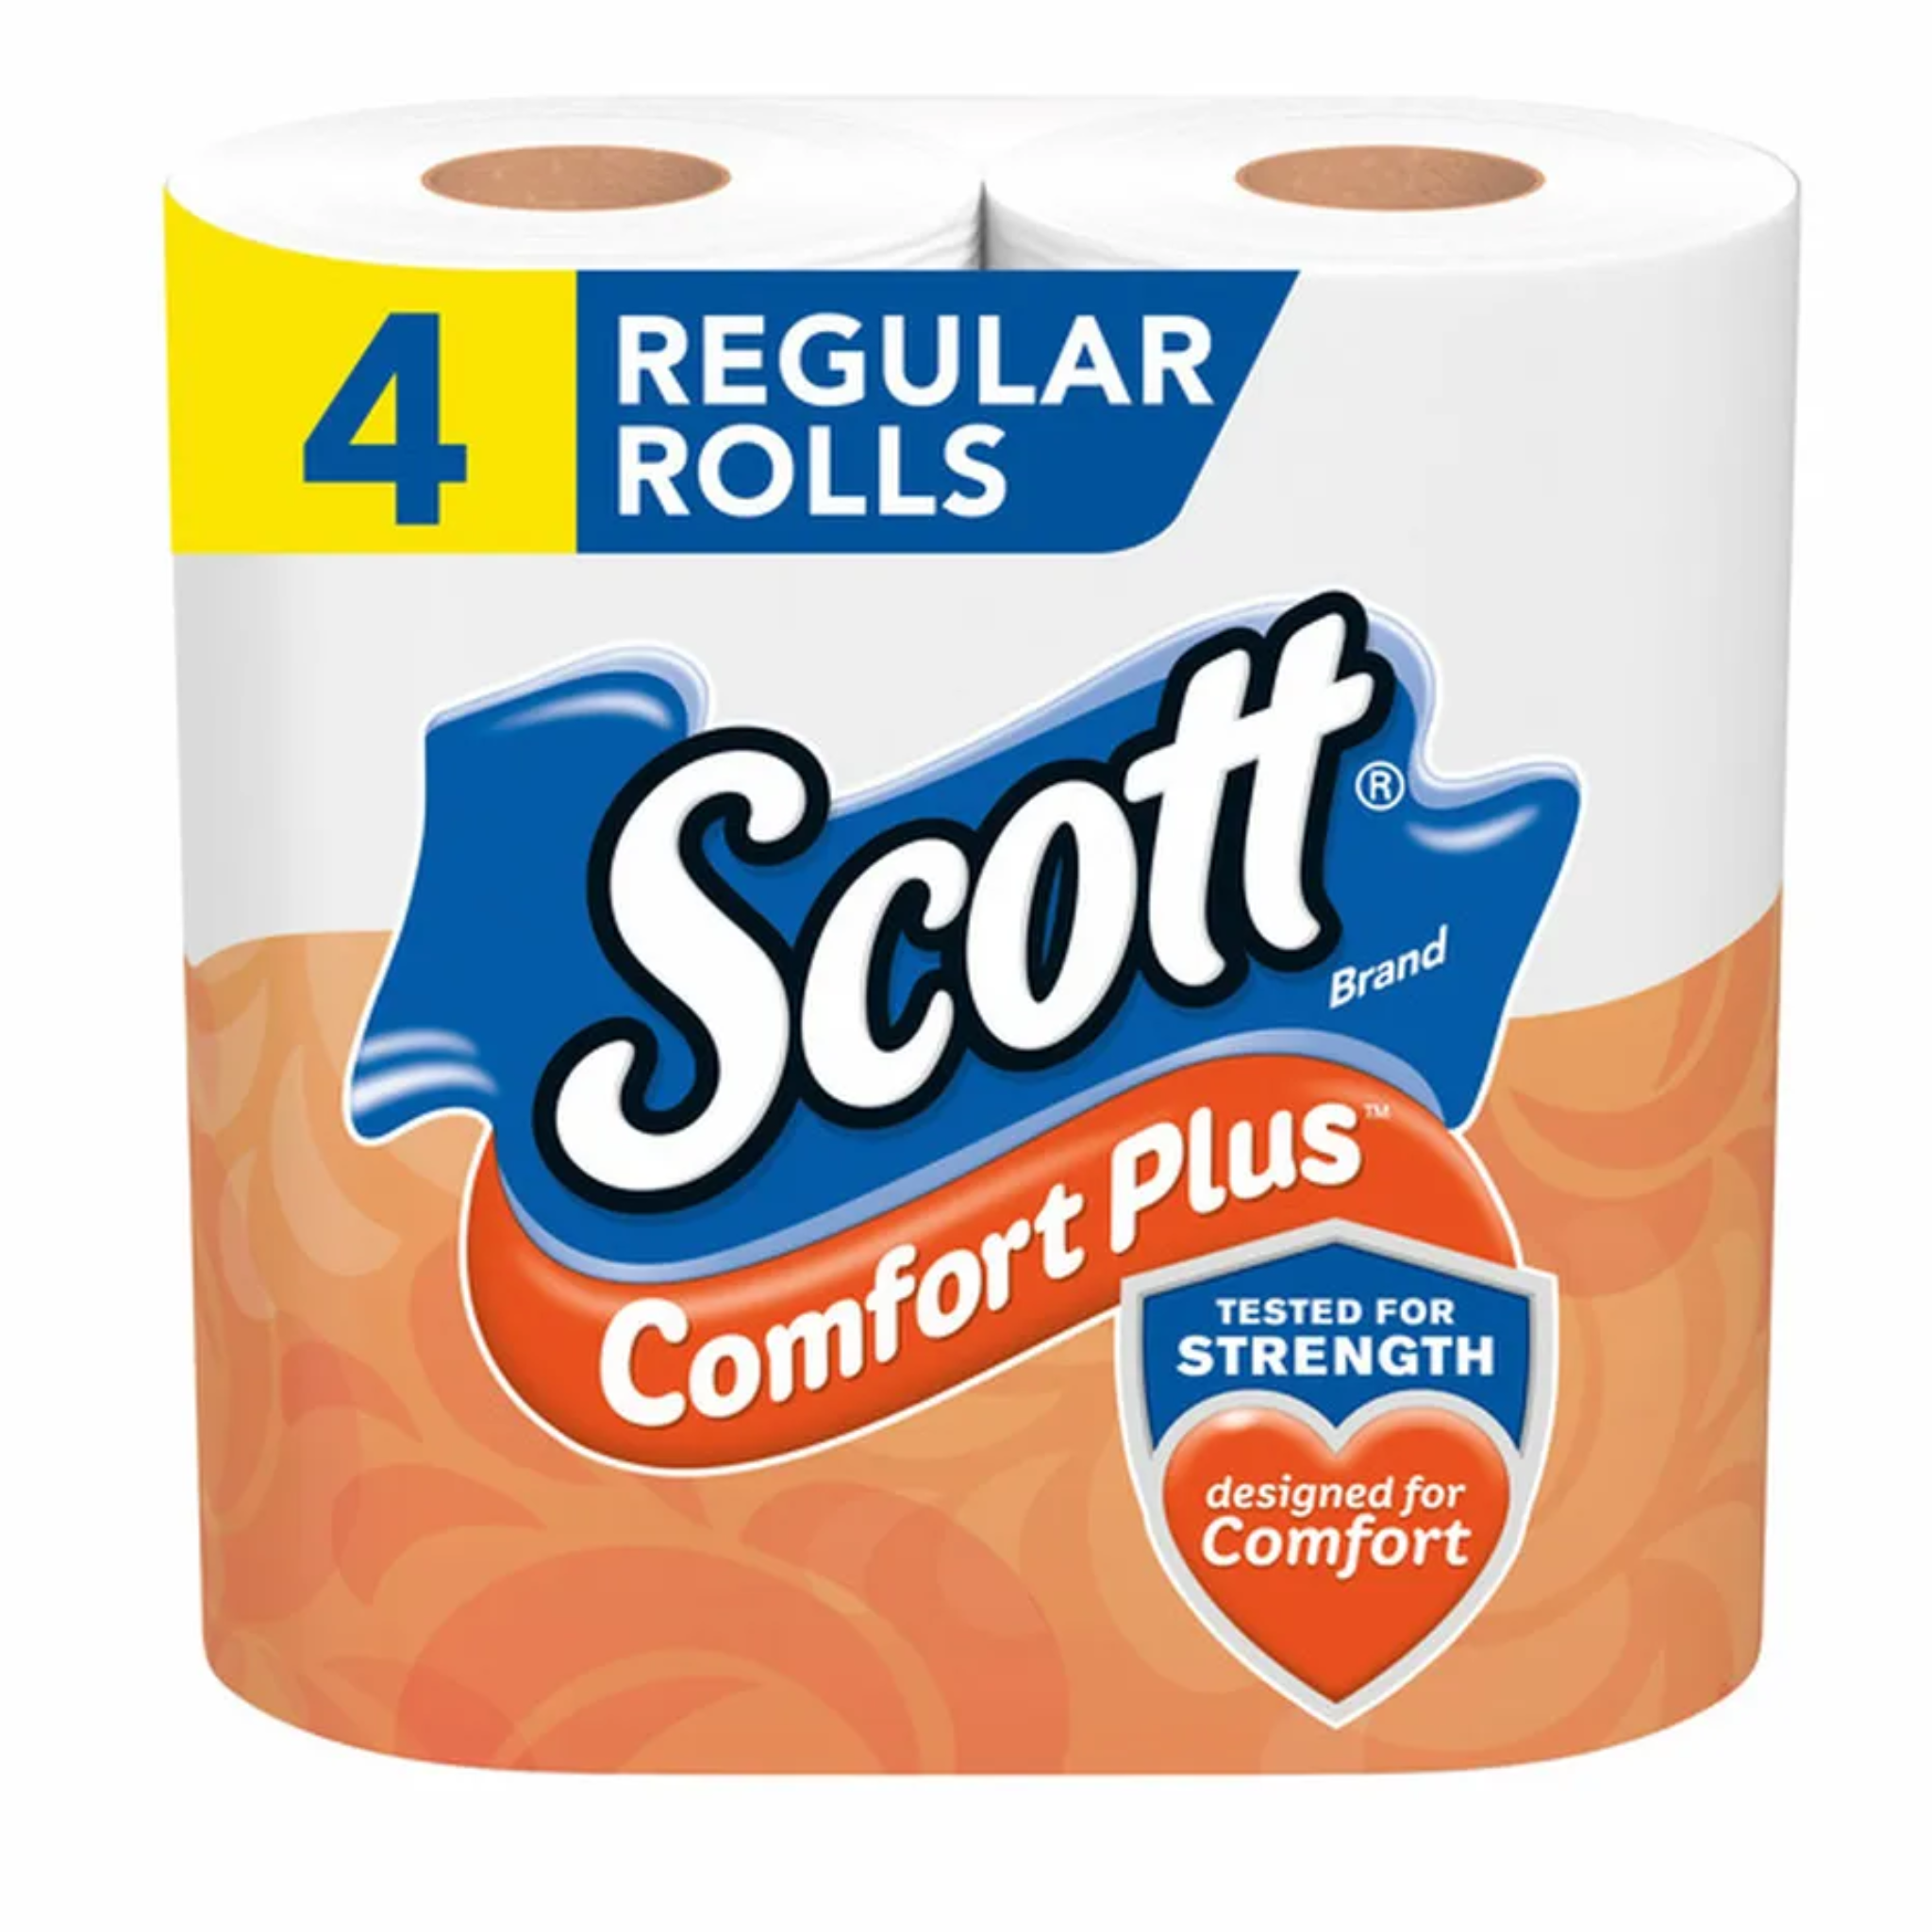 Scott Comfort Plus Toilet Paper (4)